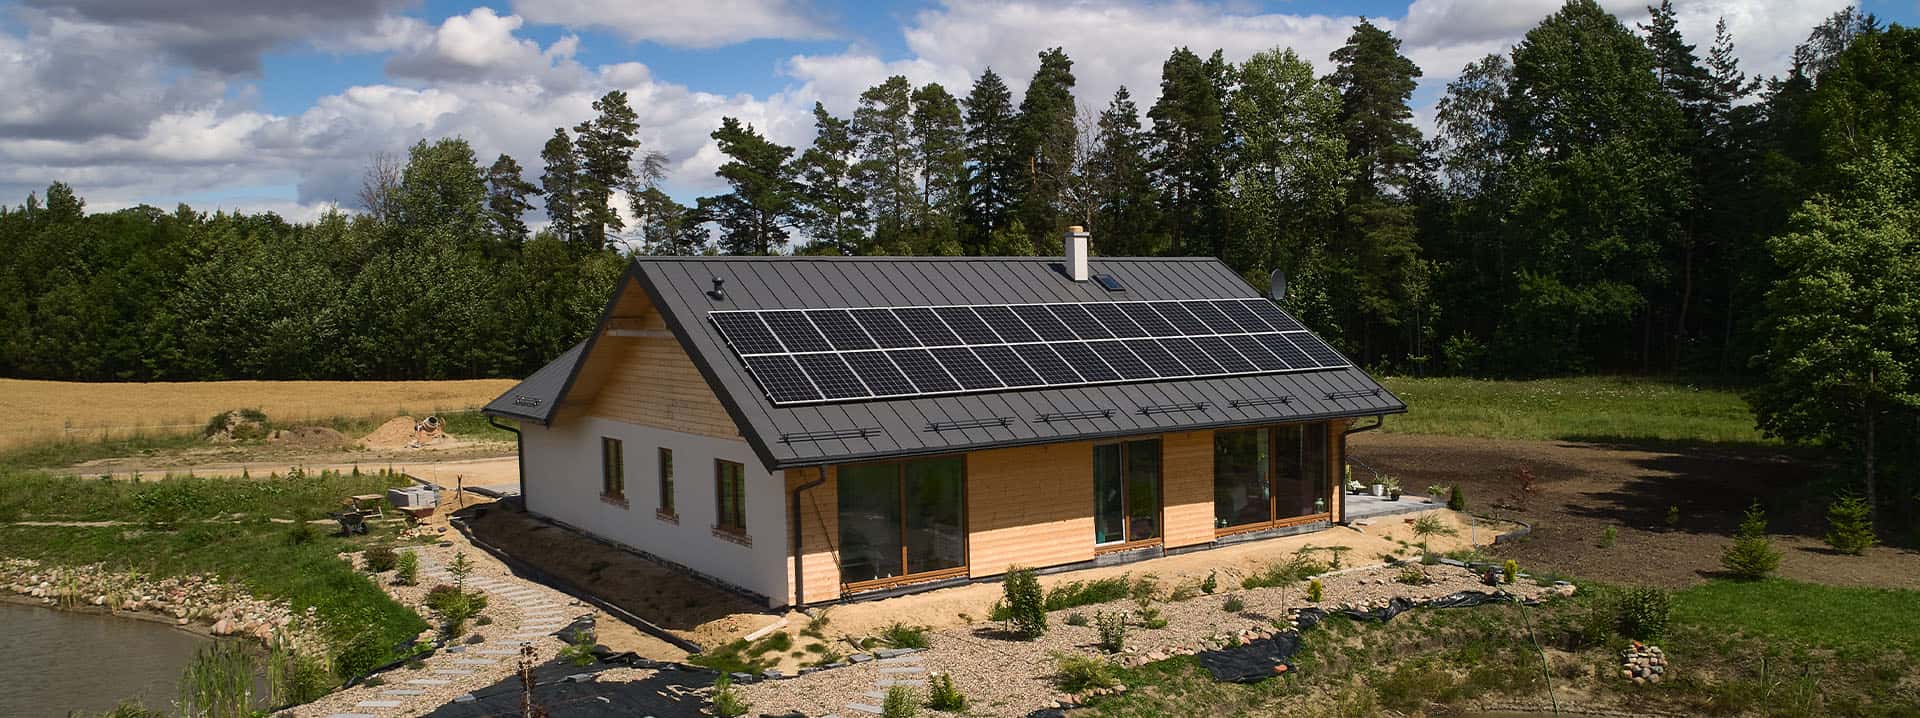 WT 2021 dom energooszczędny w praktyce